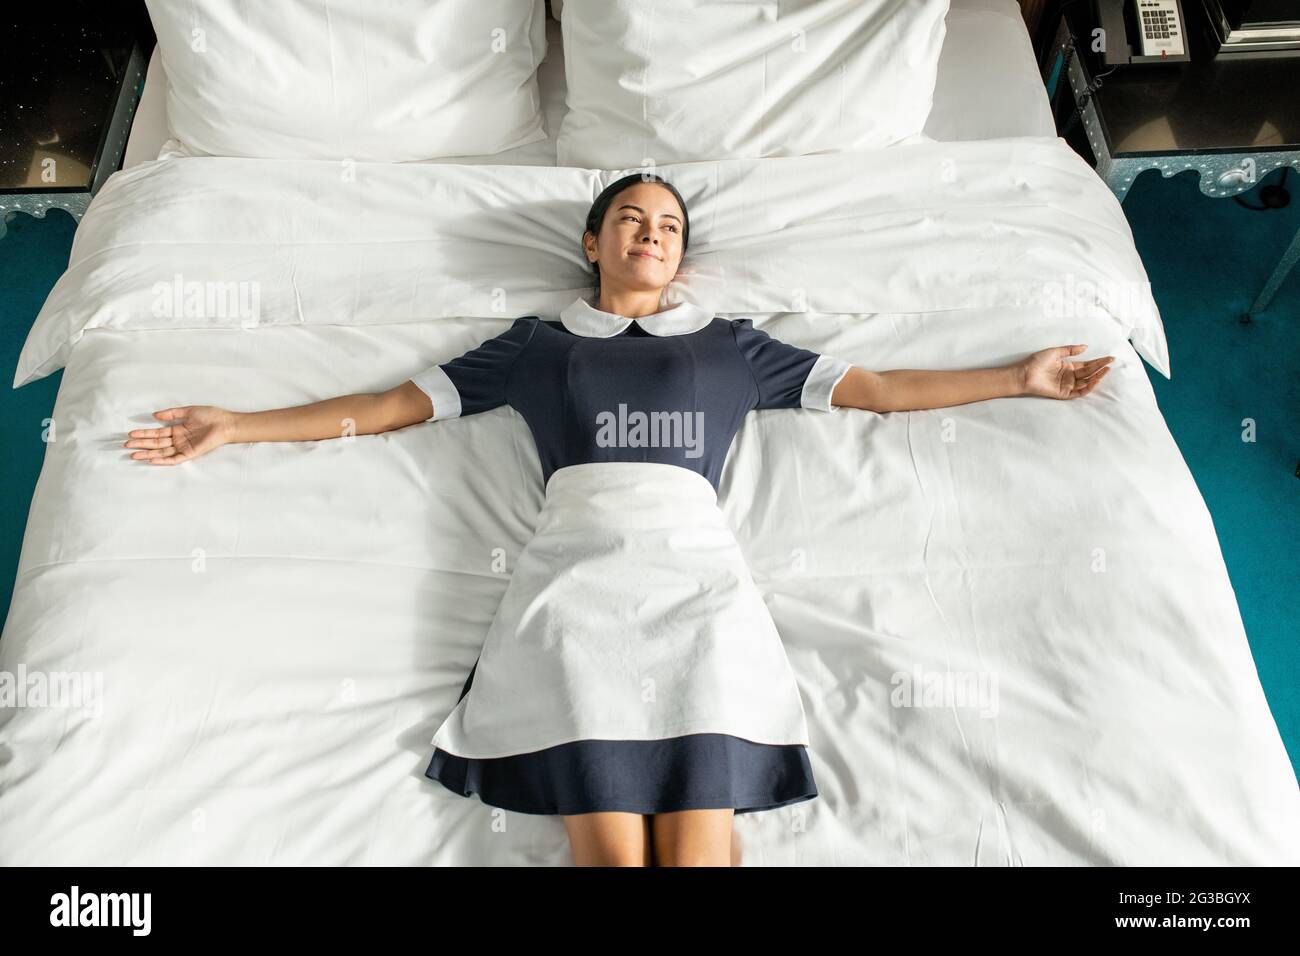 Fröhliche junge Zimmermädchen in Uniform, die auf einem großen Doppelbett liegt Stockfoto